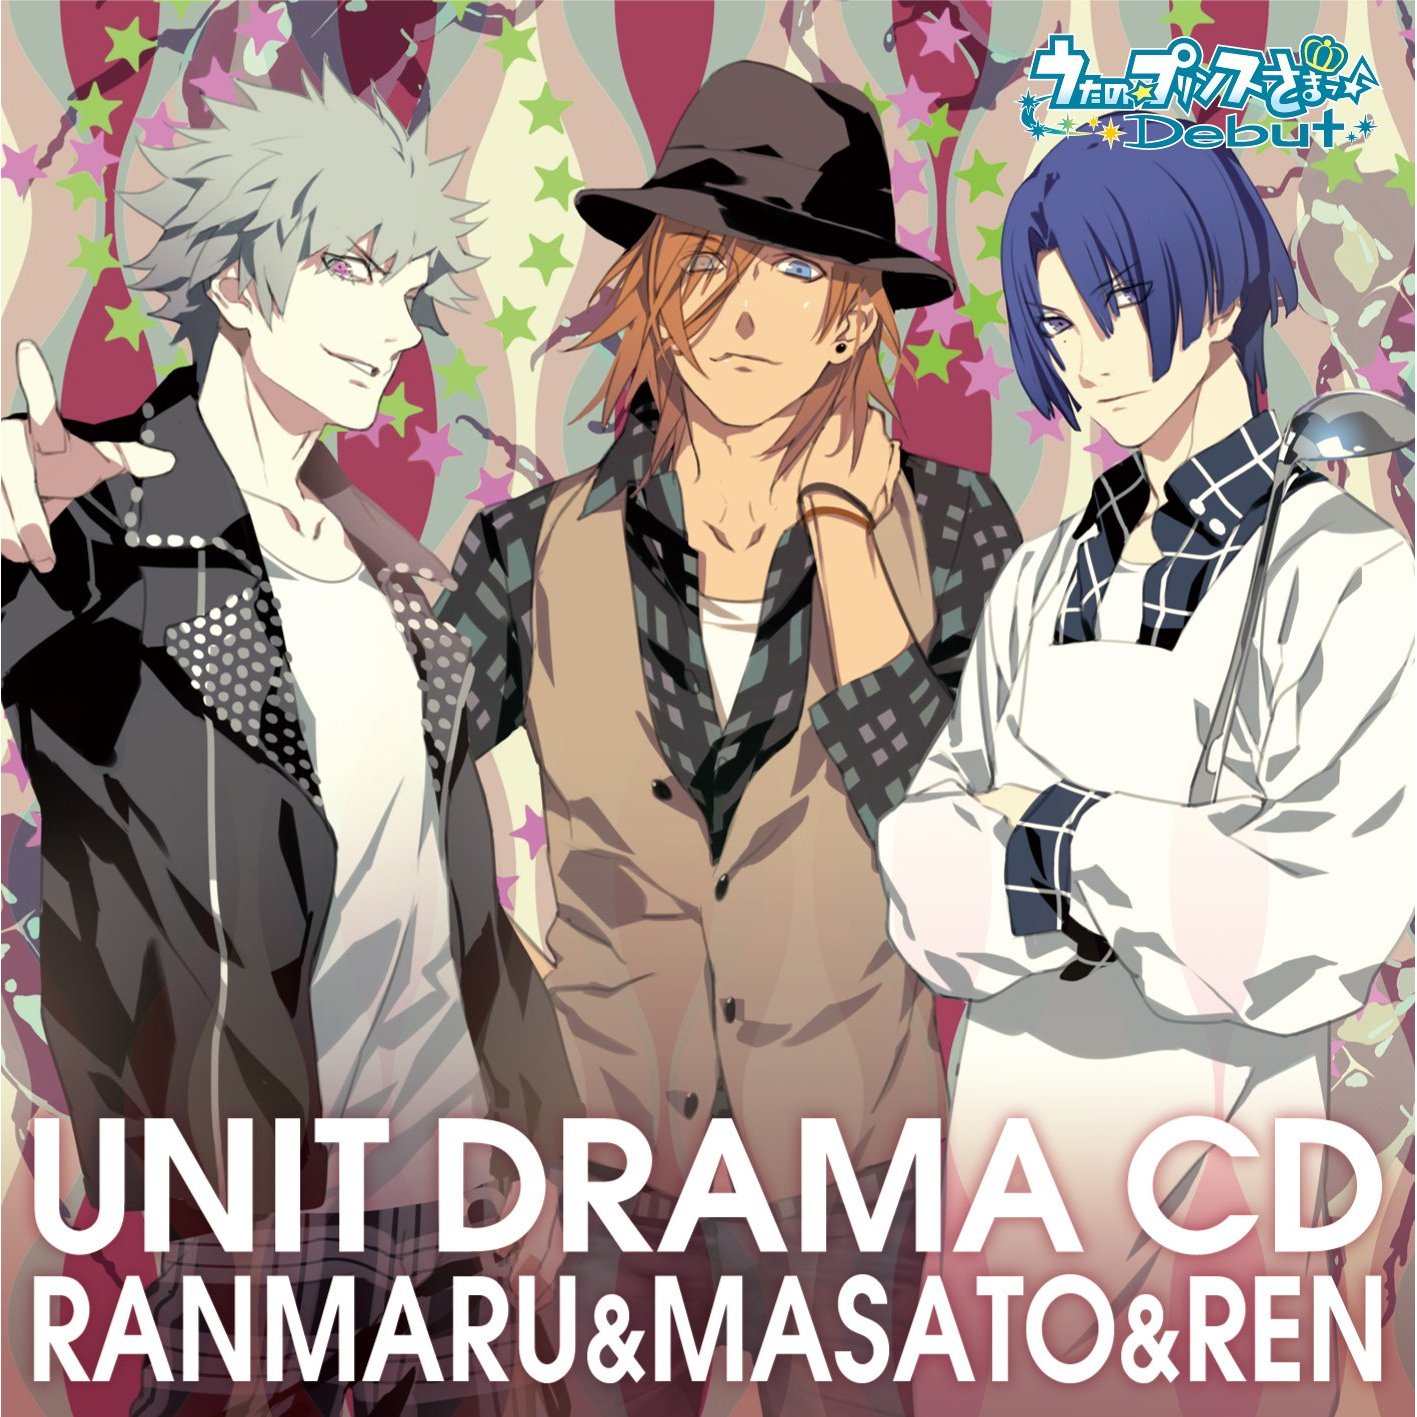 Unit Drama CD: Ranmaru & Masato & Ren | Uta no Prince-sama Wiki 